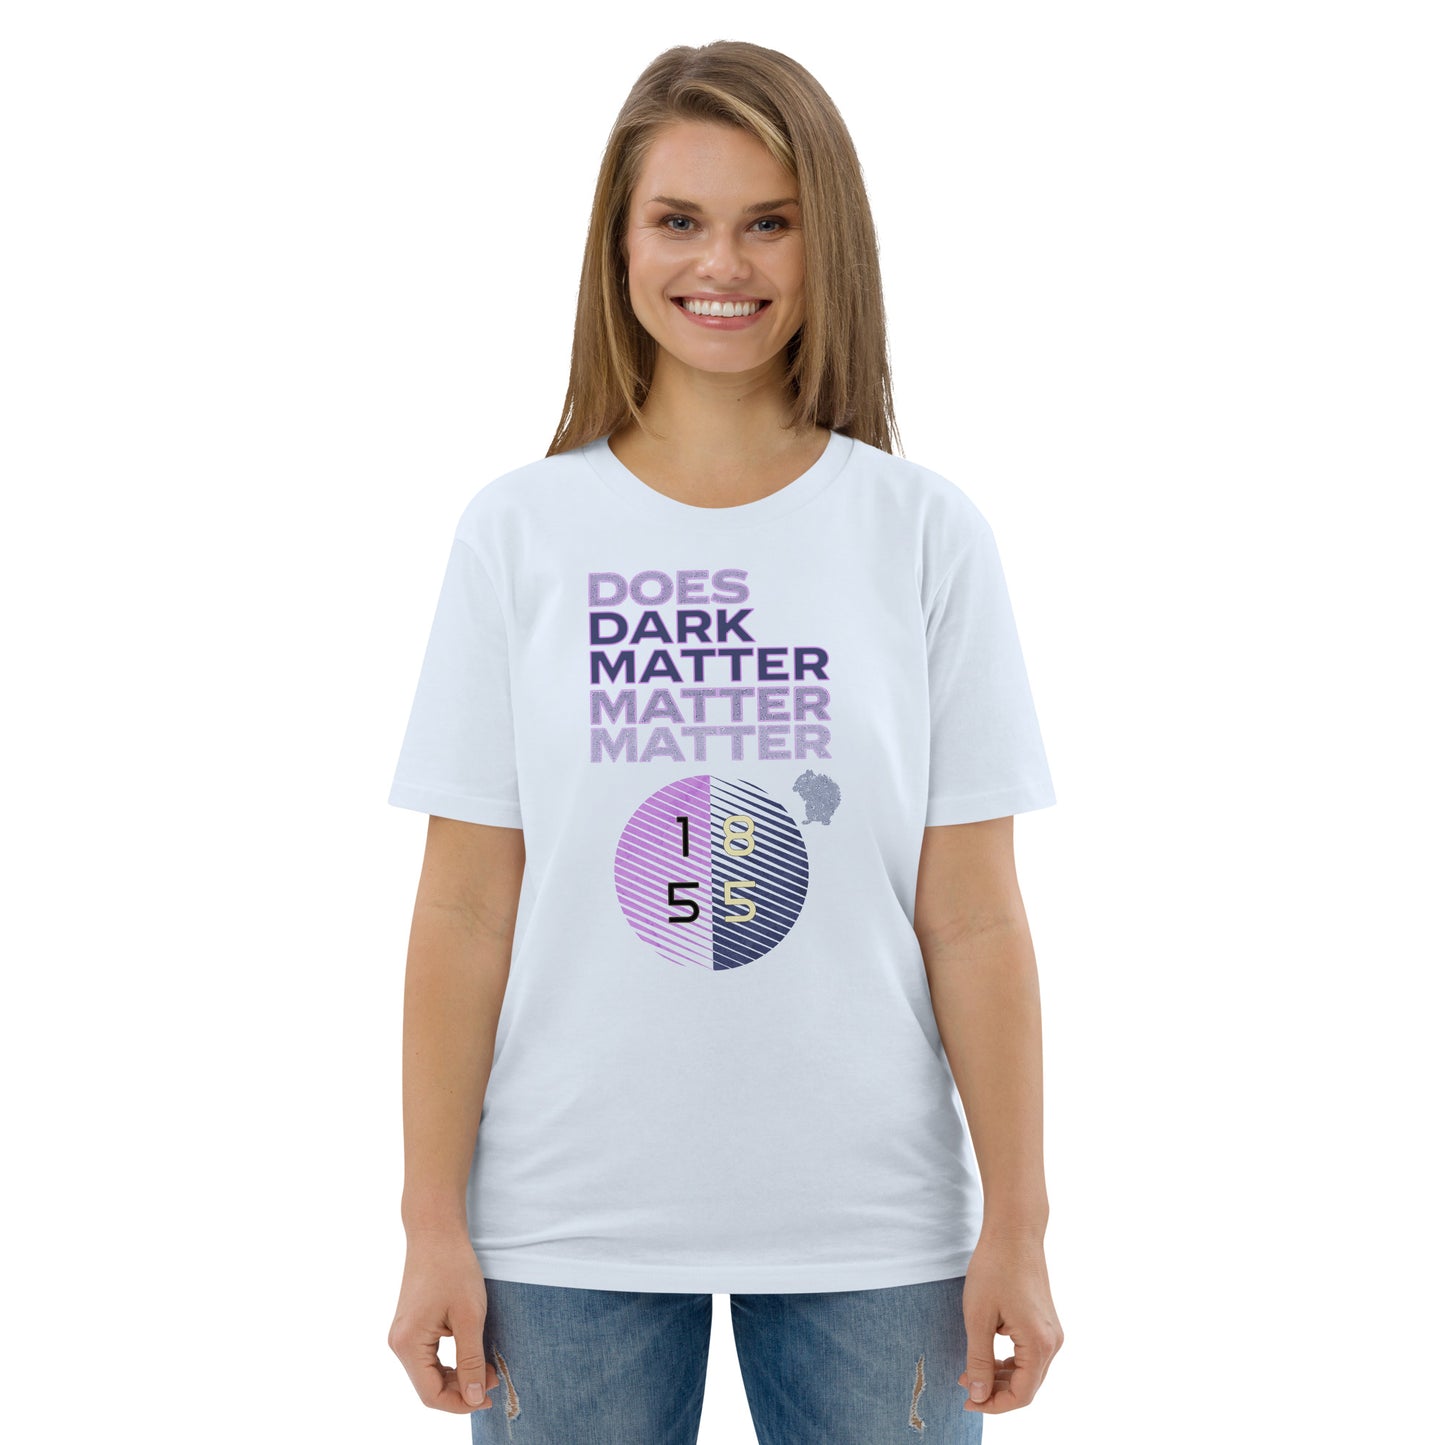 Unisex organic cotton t-shirt - Does Dark Matter Matter Really?